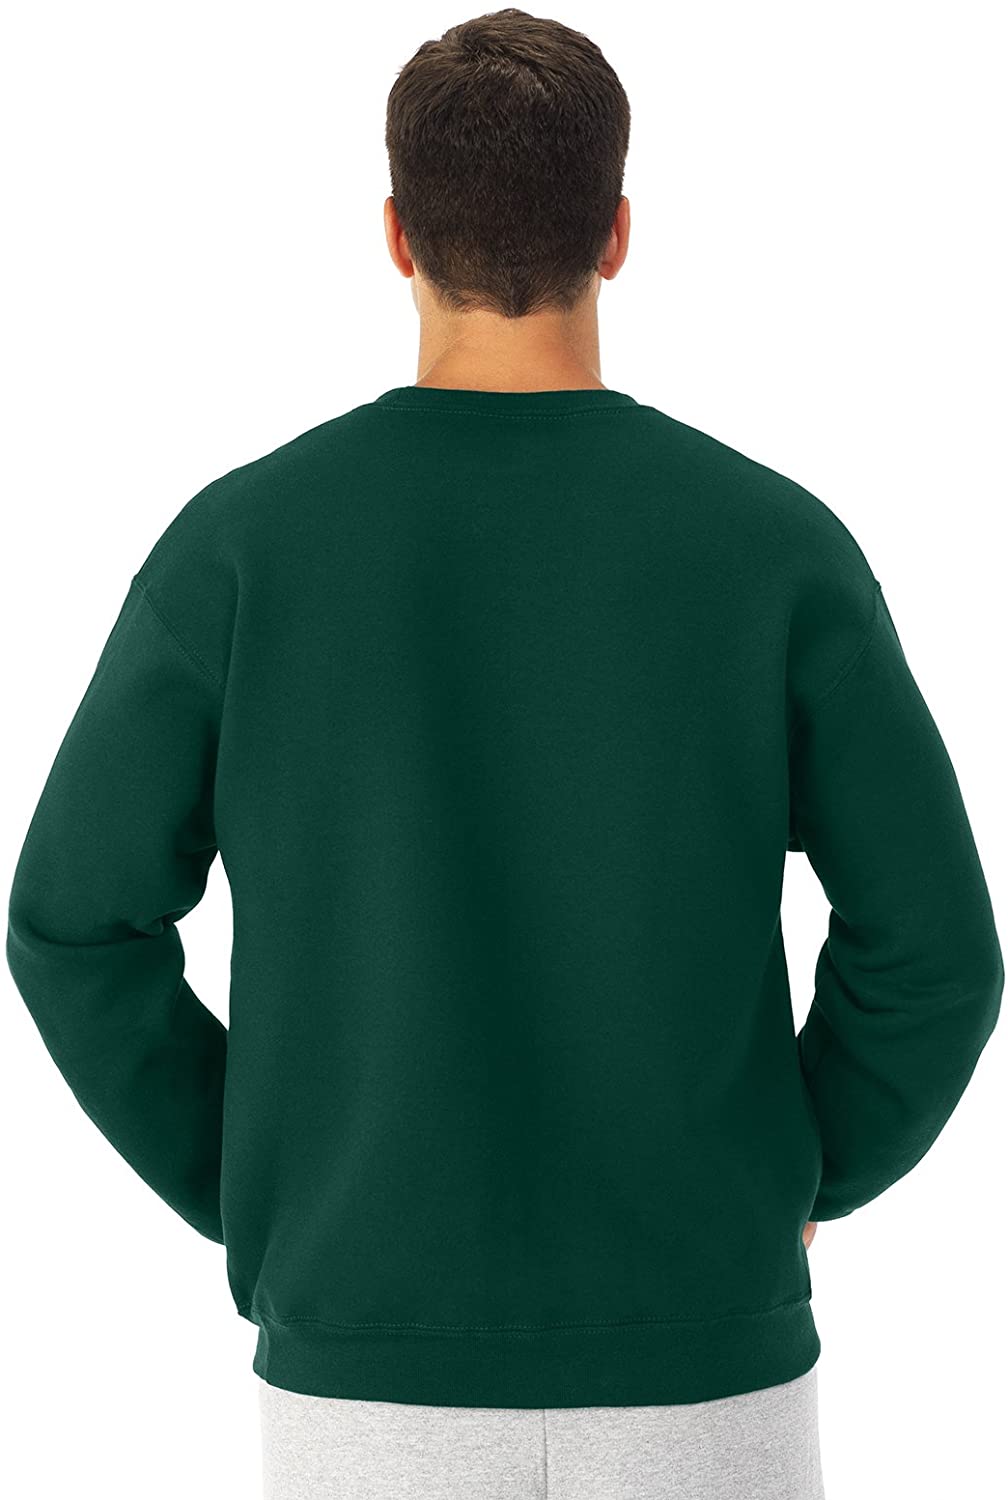 Men's Fleece Crew Sweatshirt - image 3 of 6